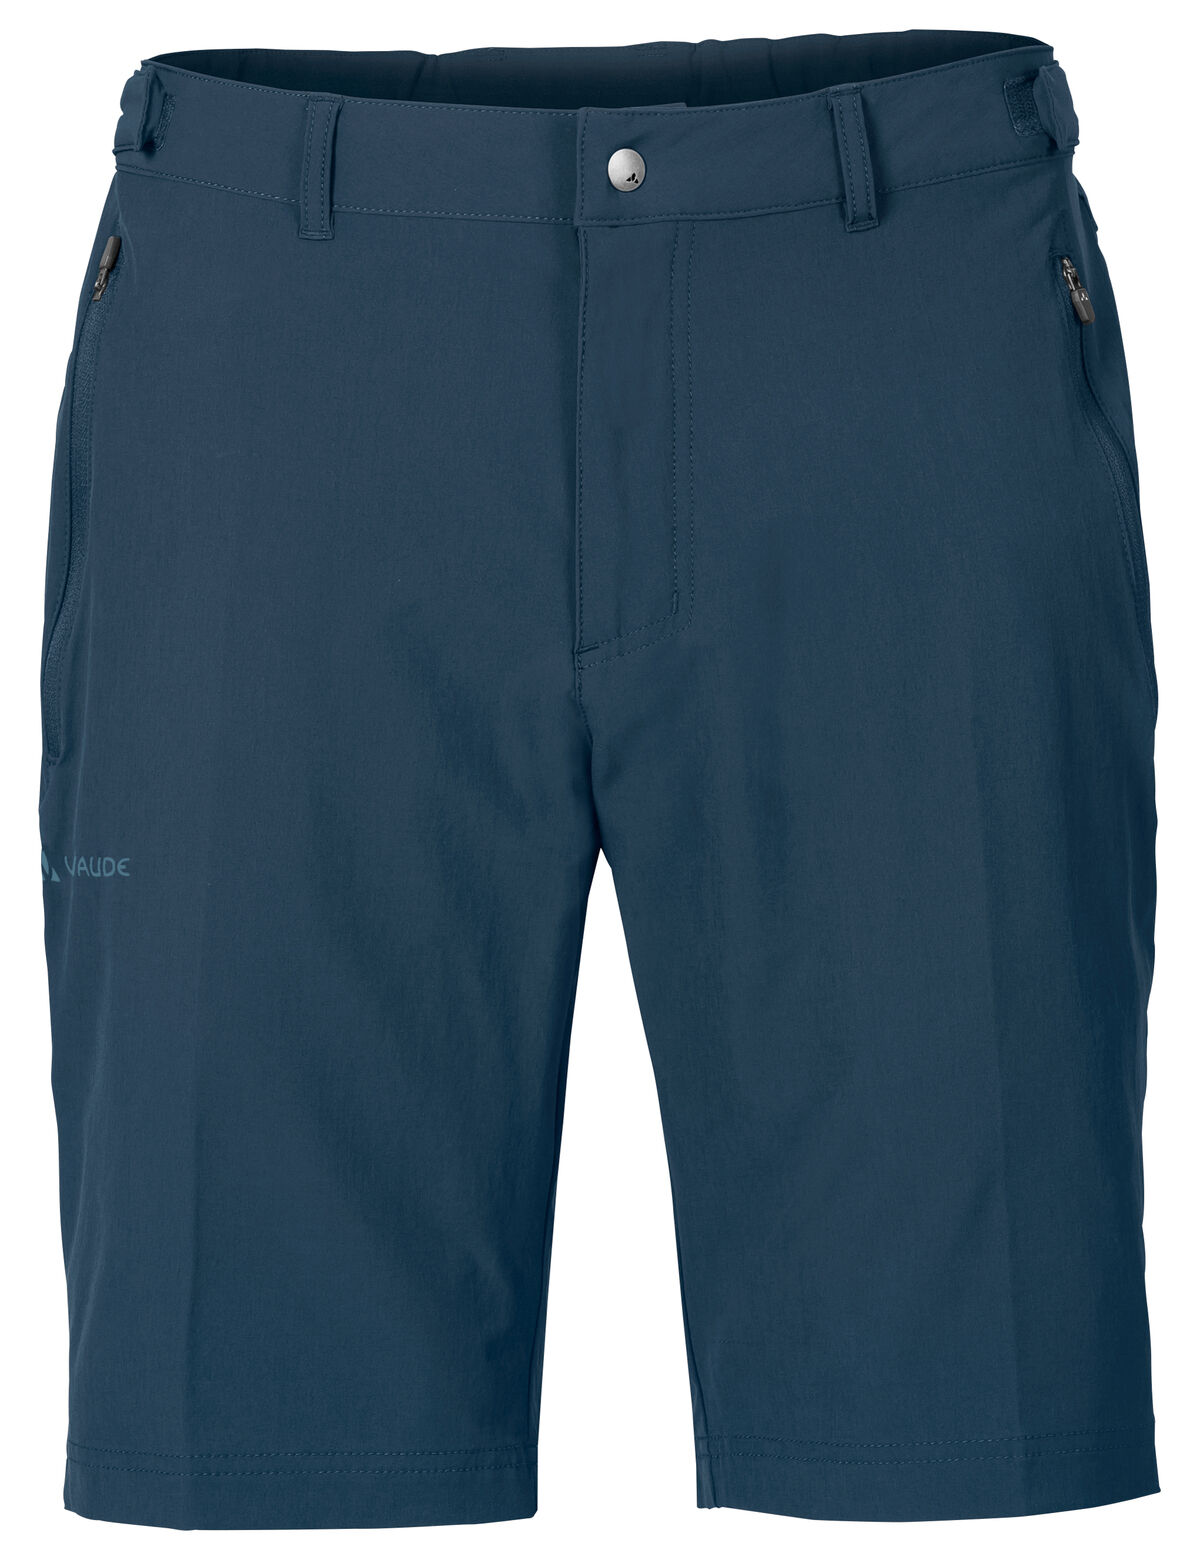 Vaude Farley Stretch Bermuda - Pantalones cortos - Hombre